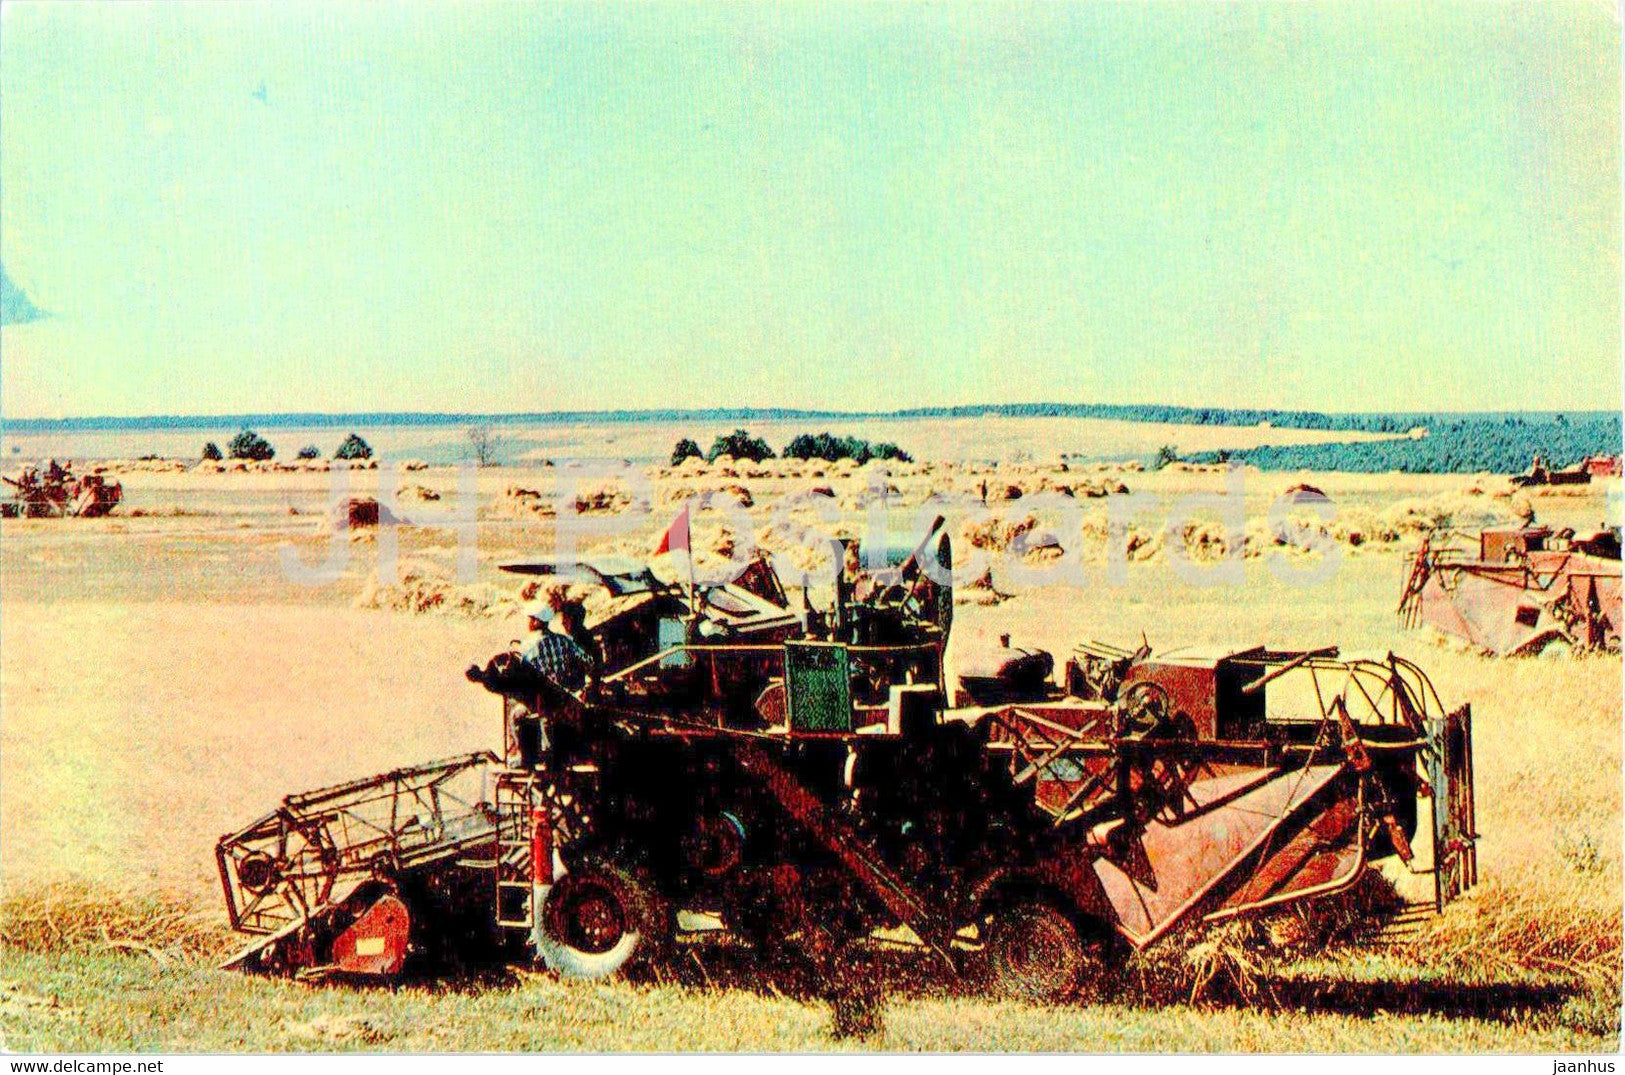 Tatarstan - Grain harvest - harvester - 1973 - Russia USSR - unused - JH Postcards